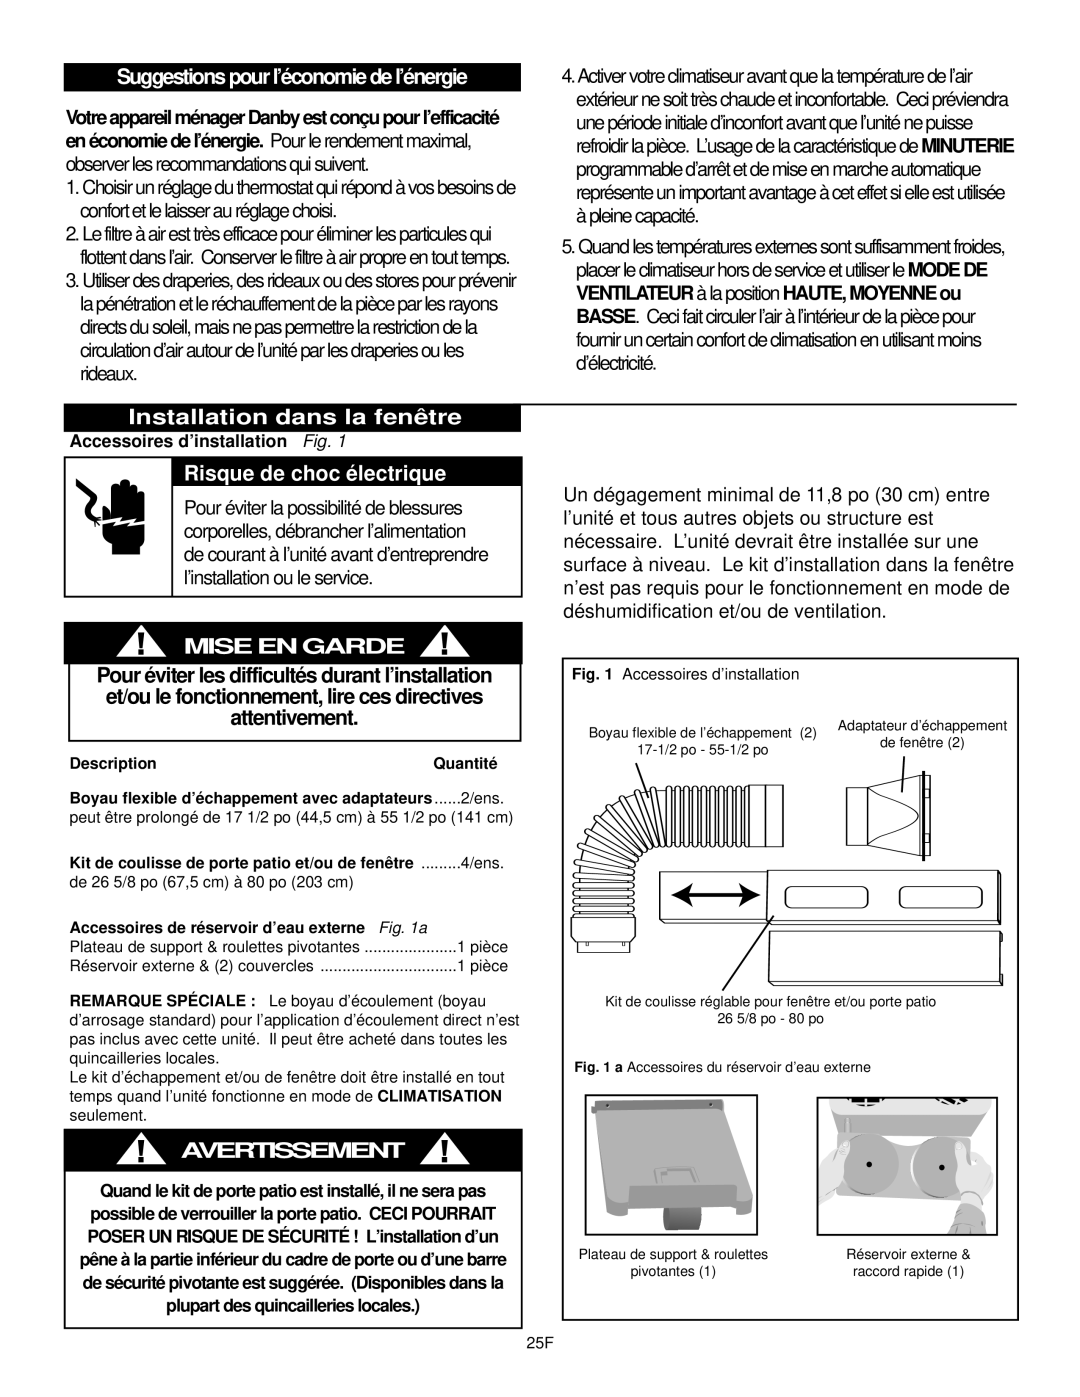 Danby DPAC10030 manual Suggestions pour l’économie de l’énergie, Installation dans la fenêtre, Risque de choc électrique 